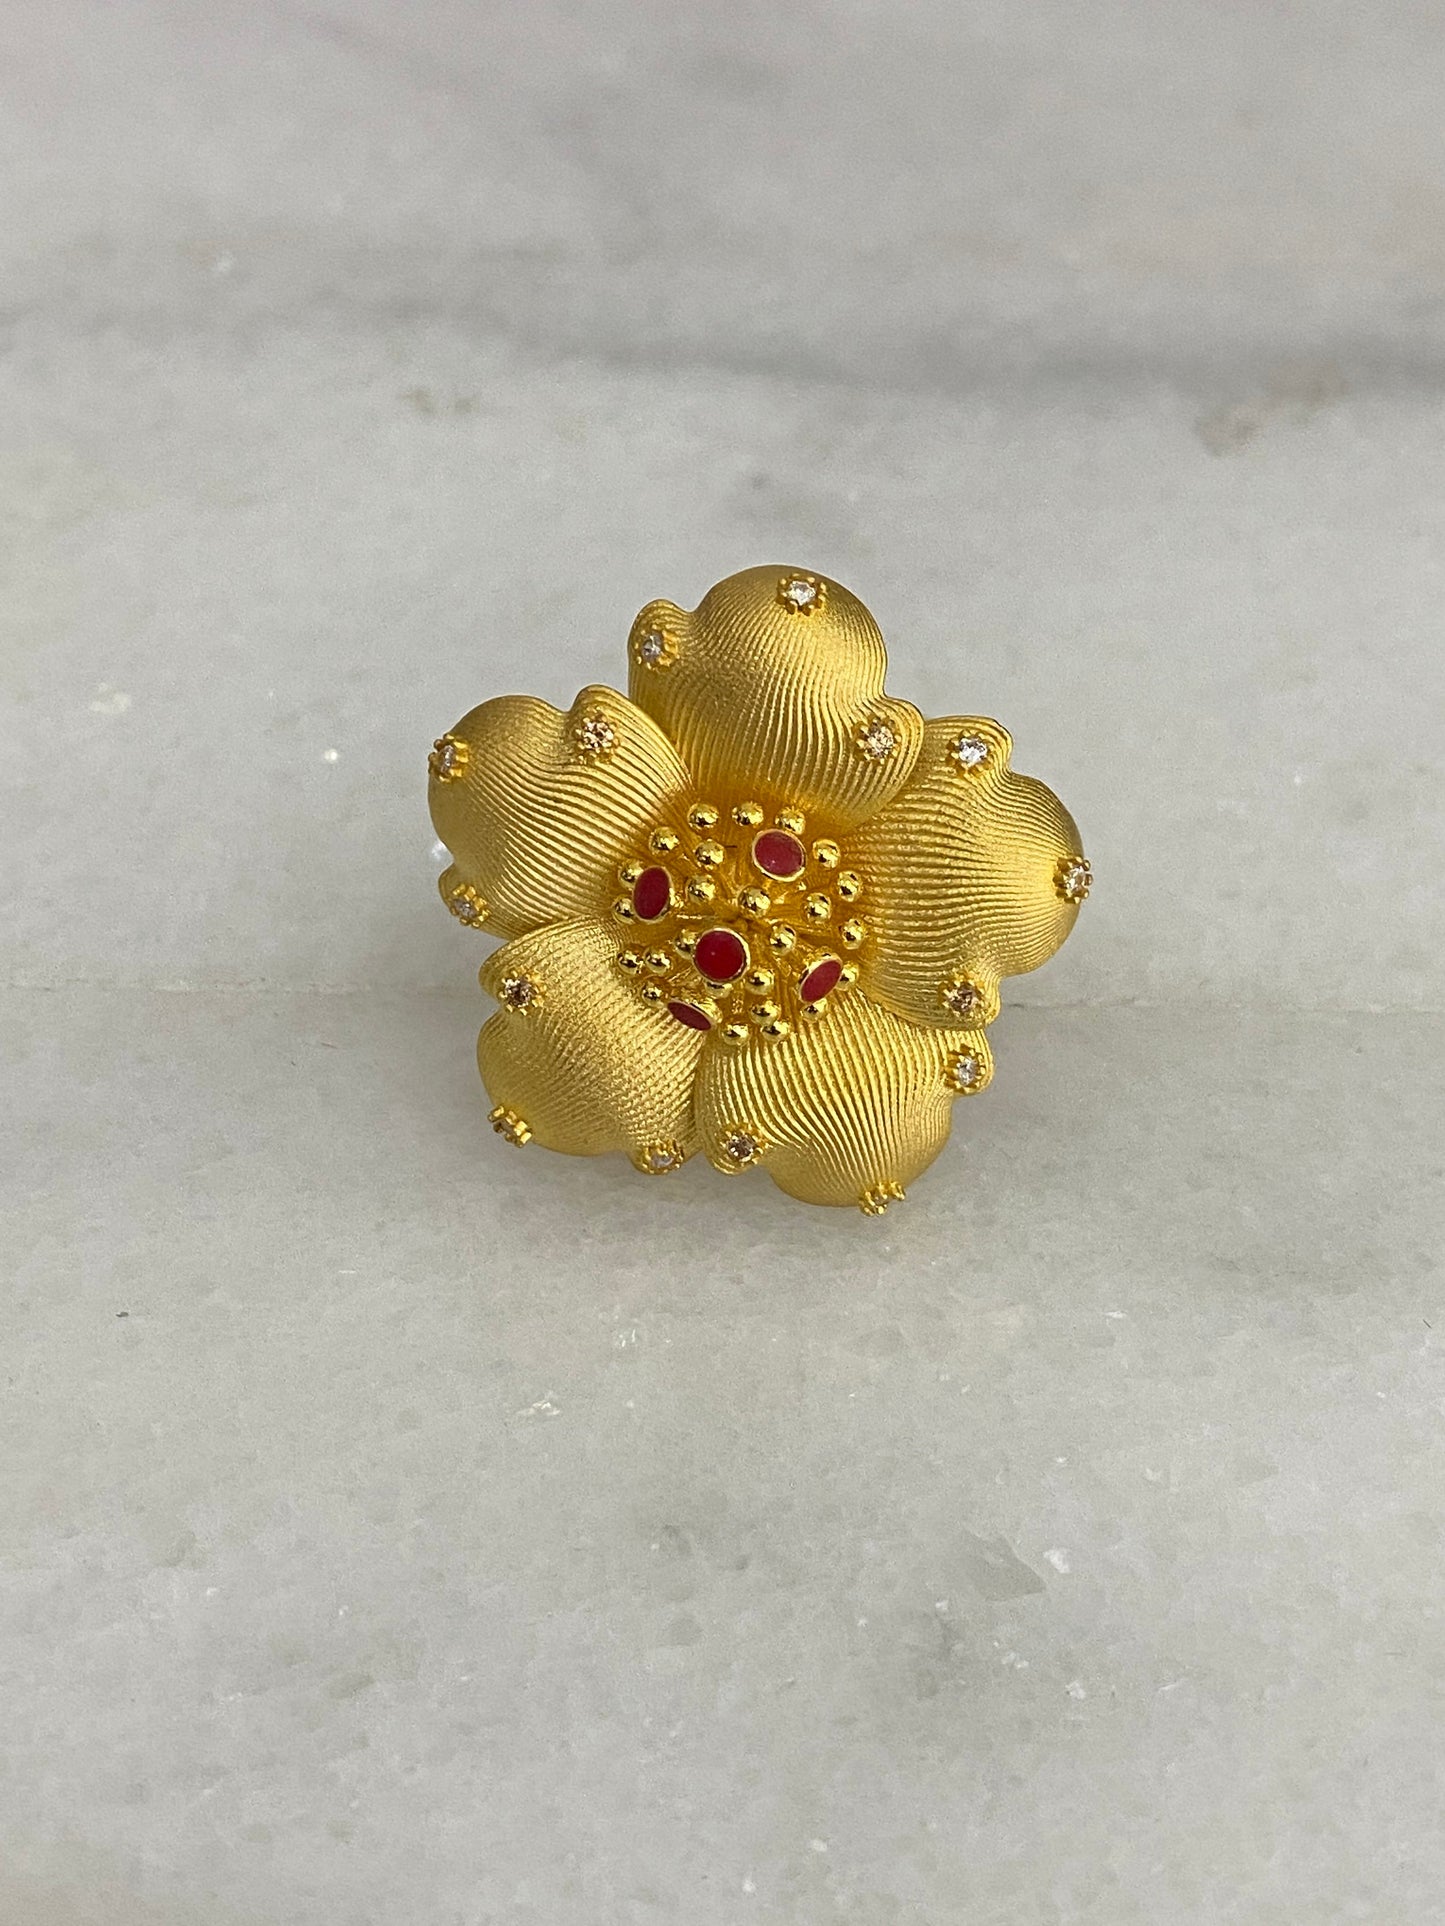 21k Gold Flower Ring